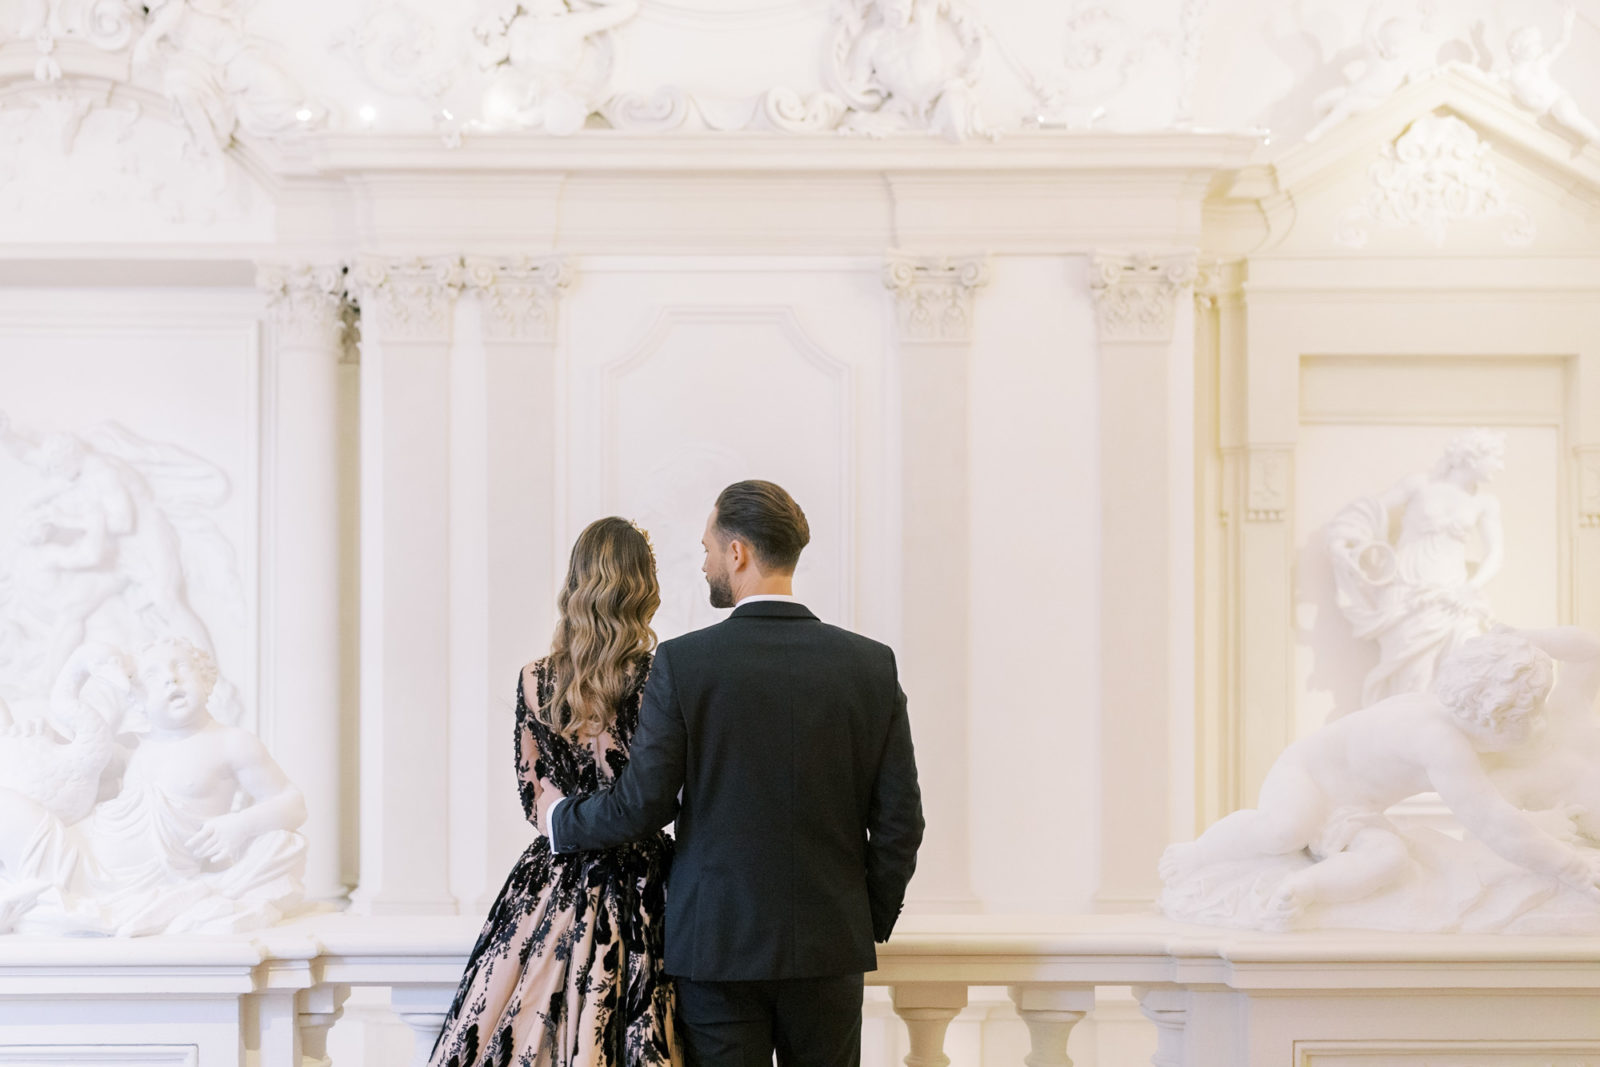 Palais Liechtenstein Wedding Photographer | Austria Luxury Wedding | Vienna Film Photos | Destination Wedding | Molly Carr Photography